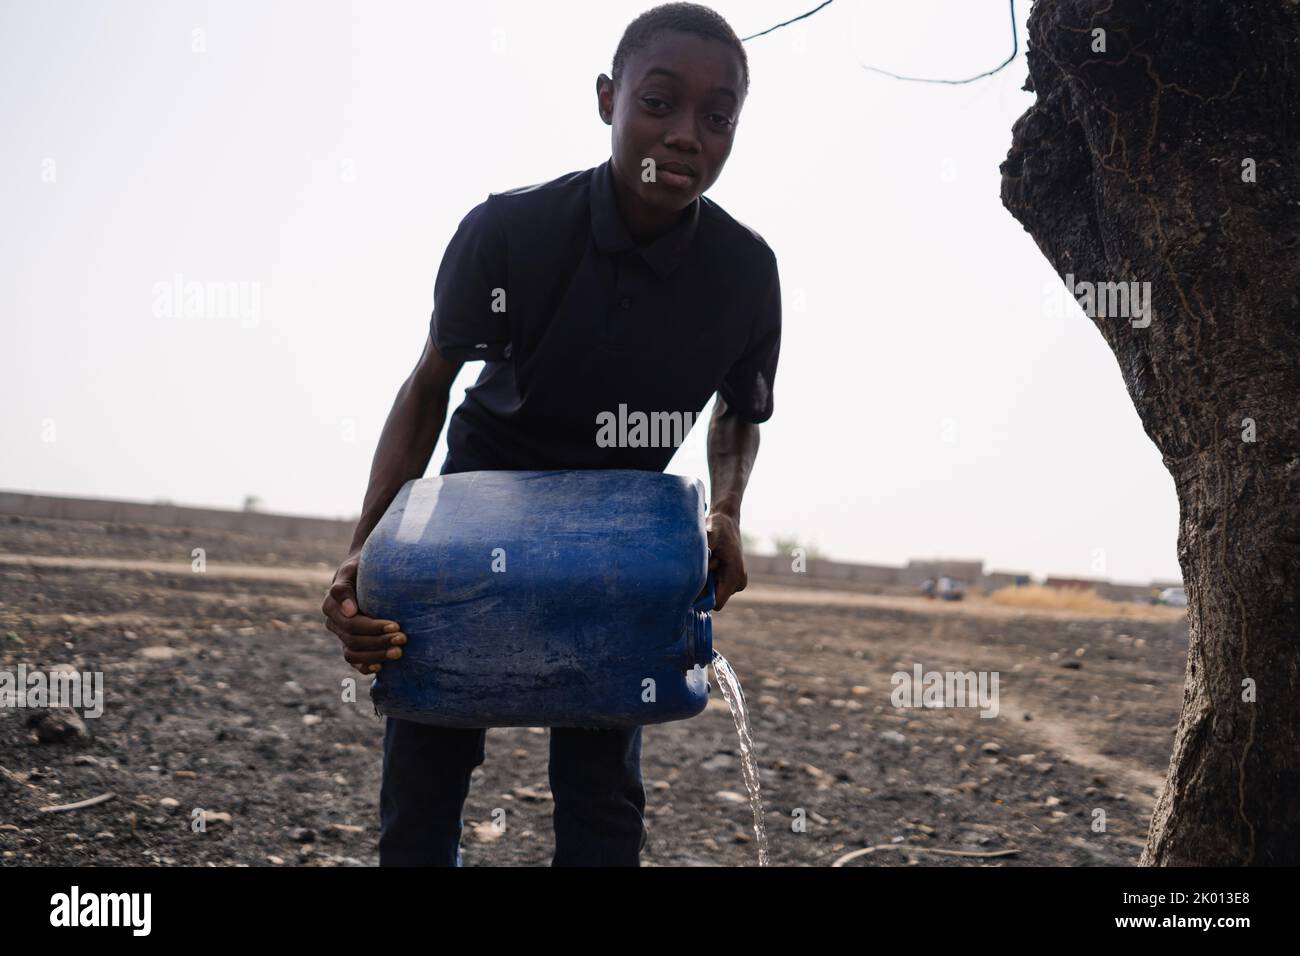 Image sombre et floue d'un jeune Africain avec une bonde d'eau, irriguant un champ asséché ; concept de désespoir des personnes du tiers monde pour faire face Banque D'Images